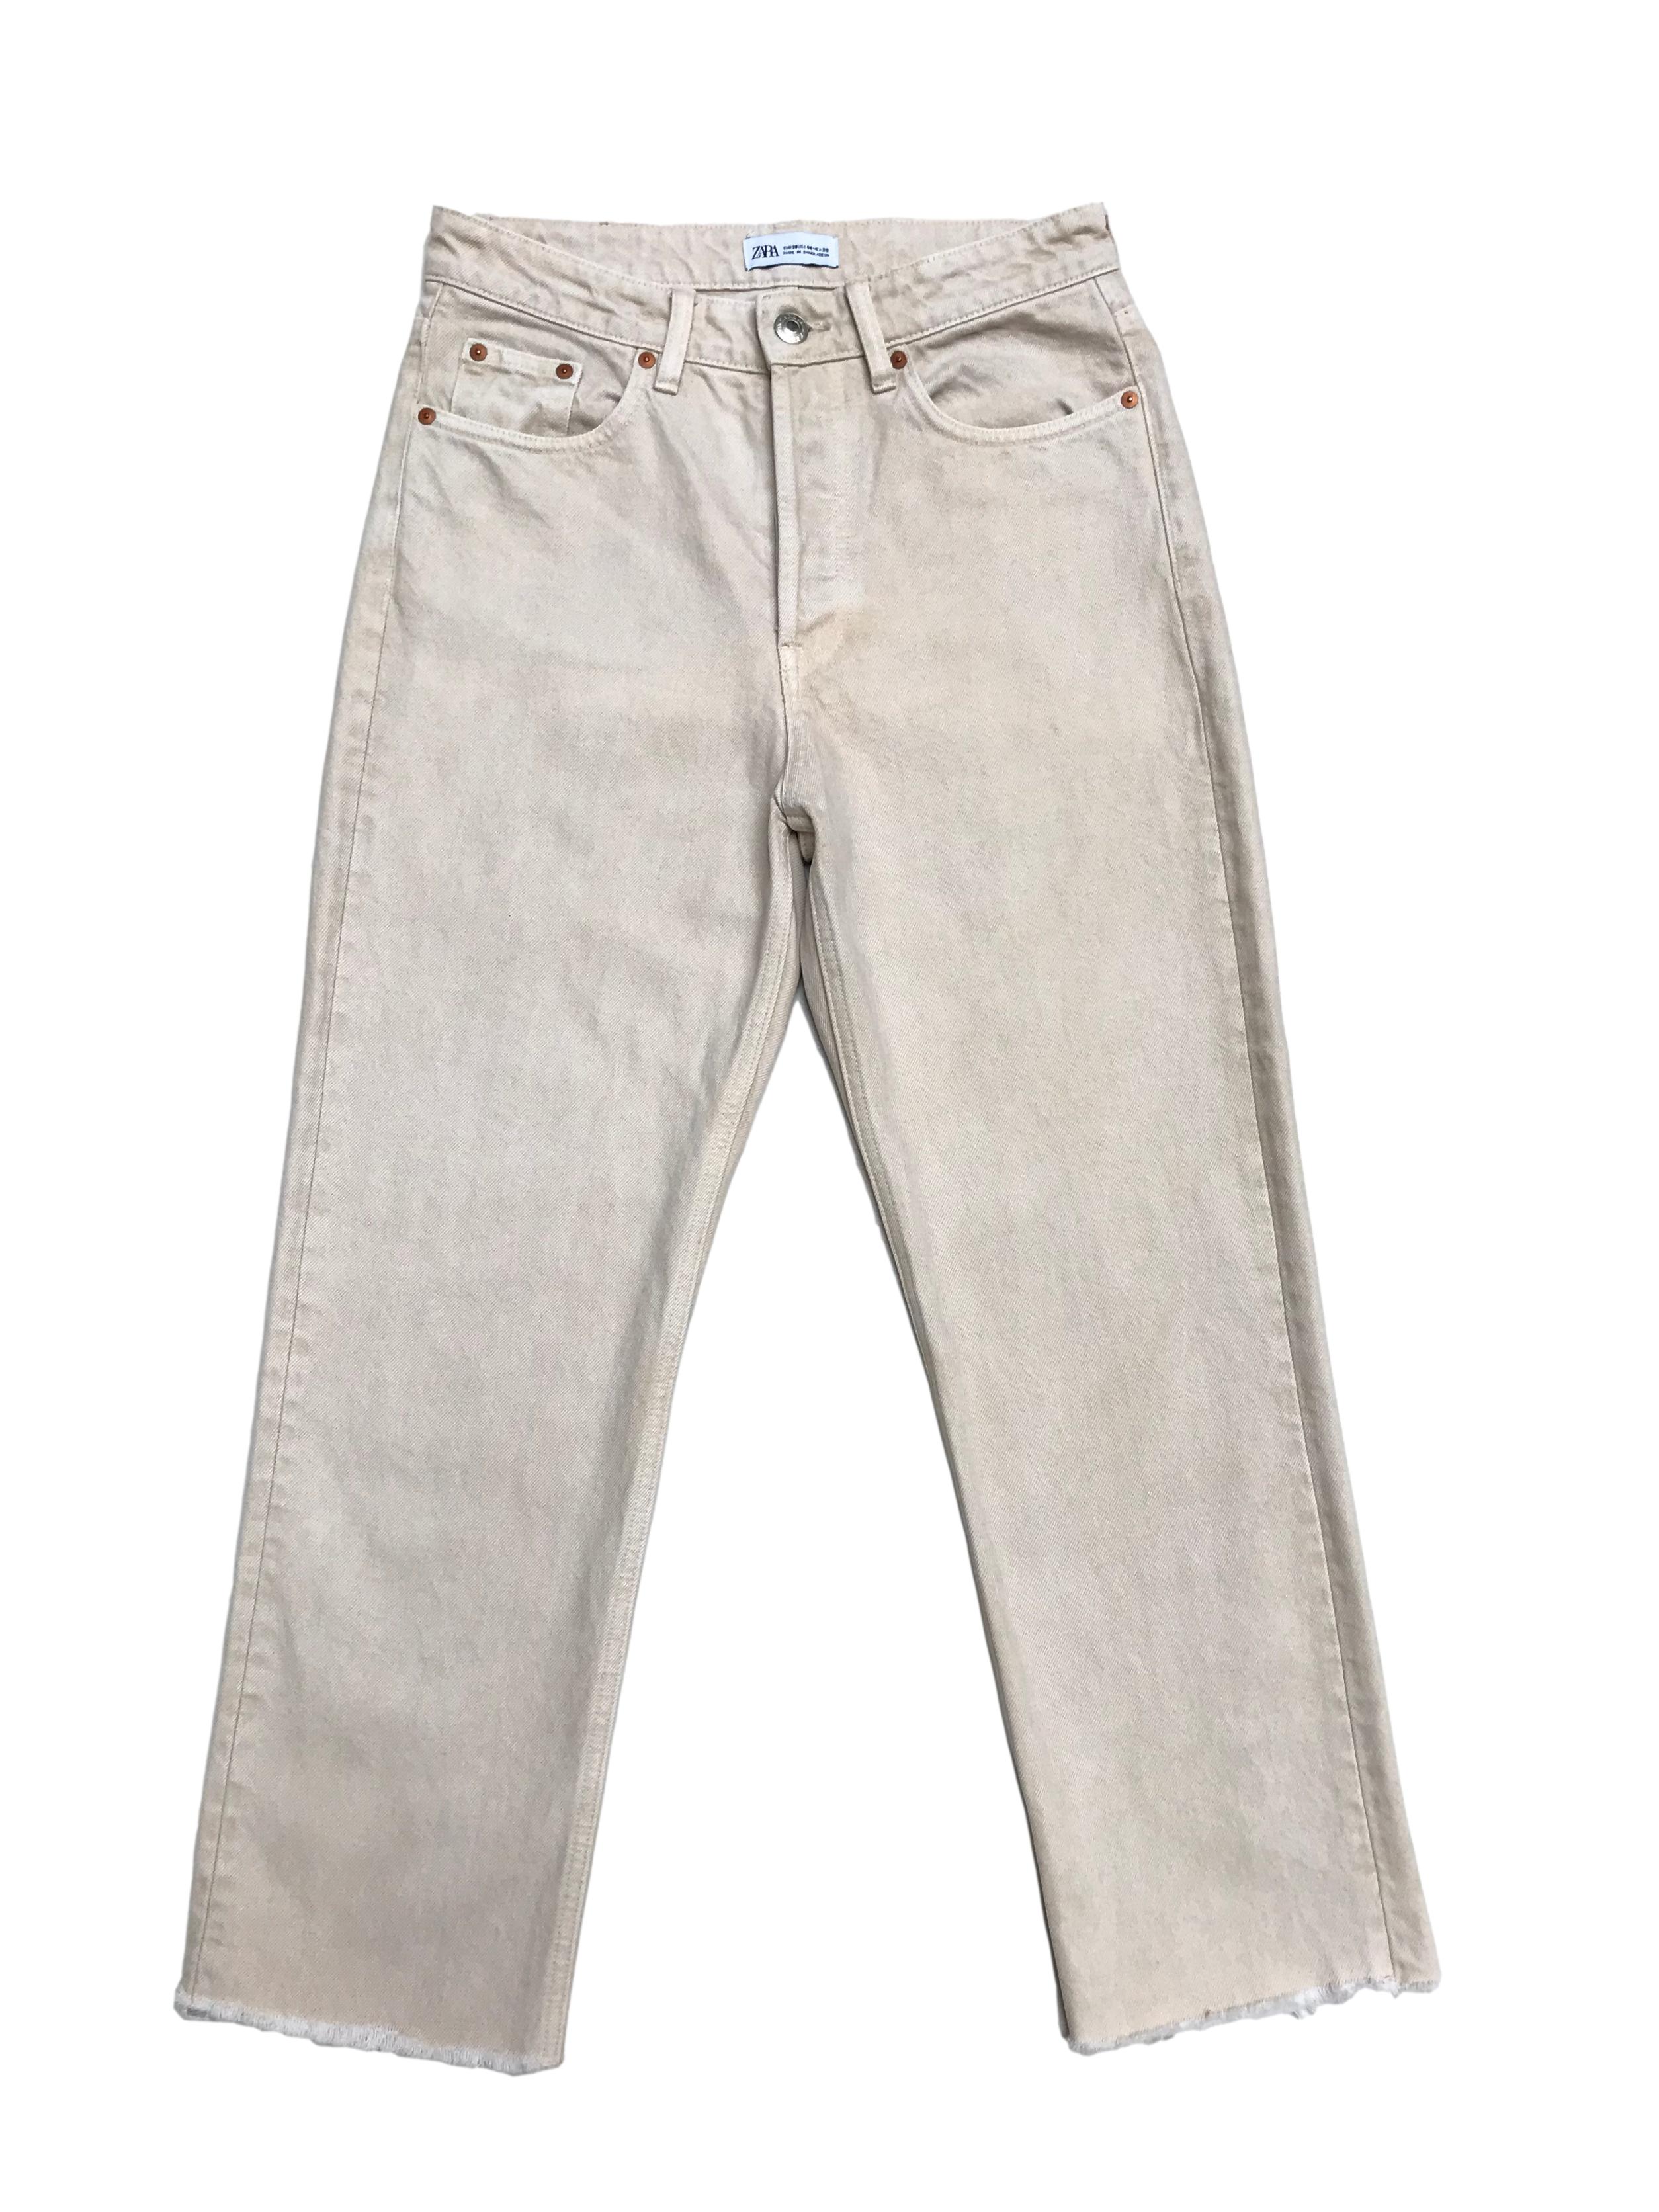 Pantalón Zara denim crema efecto lavado, a la cintura, pierna recta y basta desflecada. Cintura 76cm